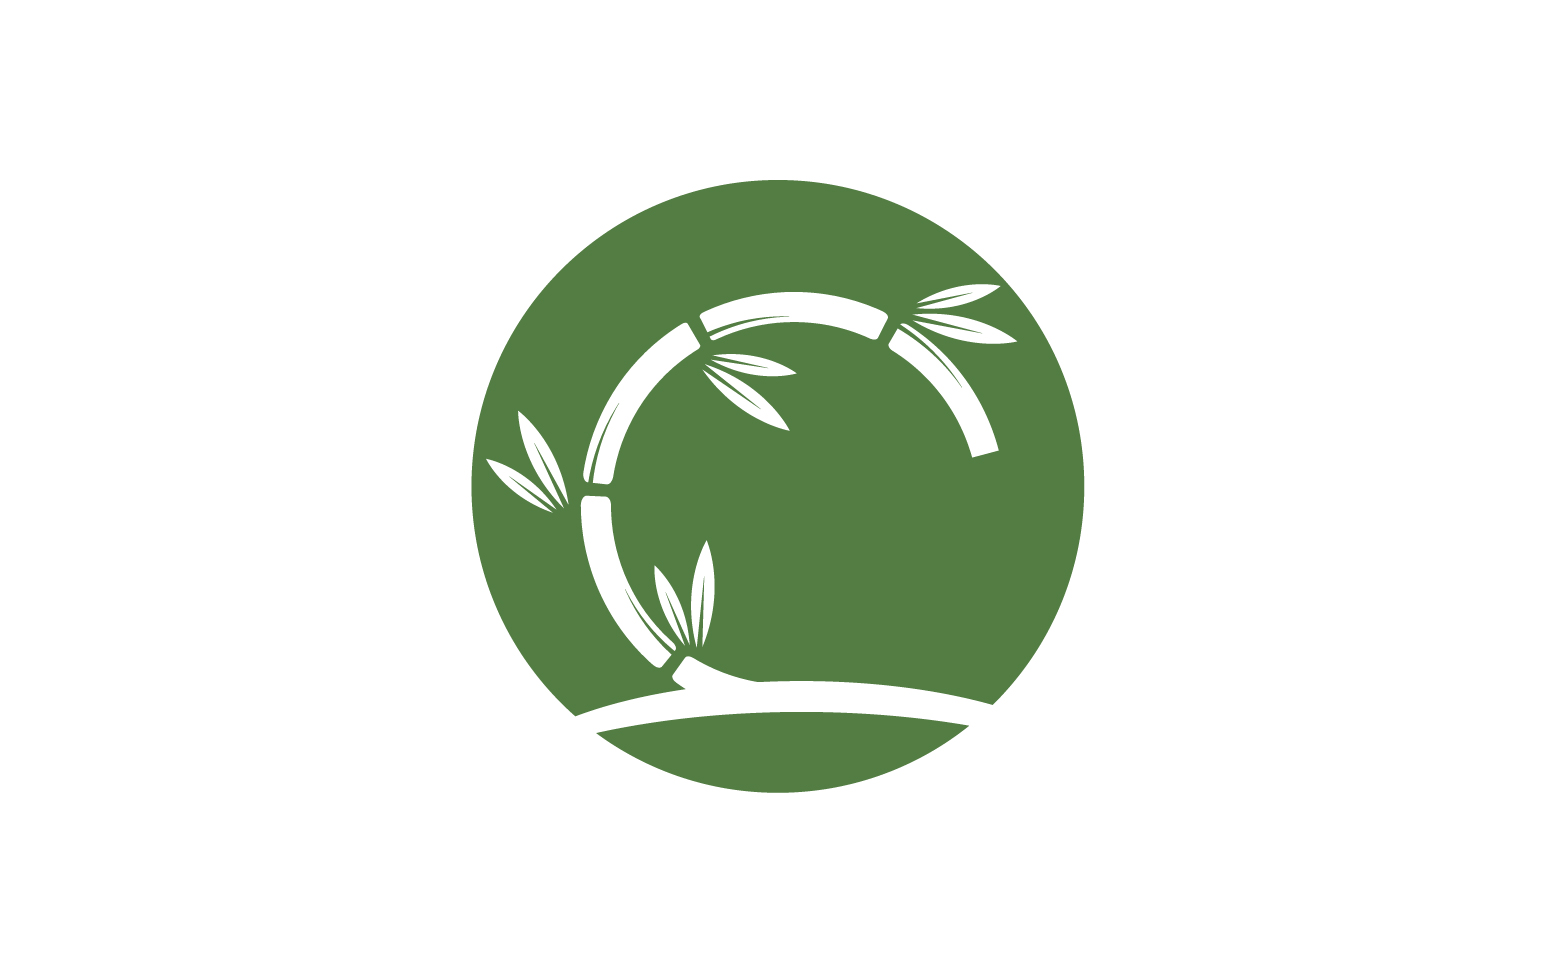 Bamboo tree logo vector v26